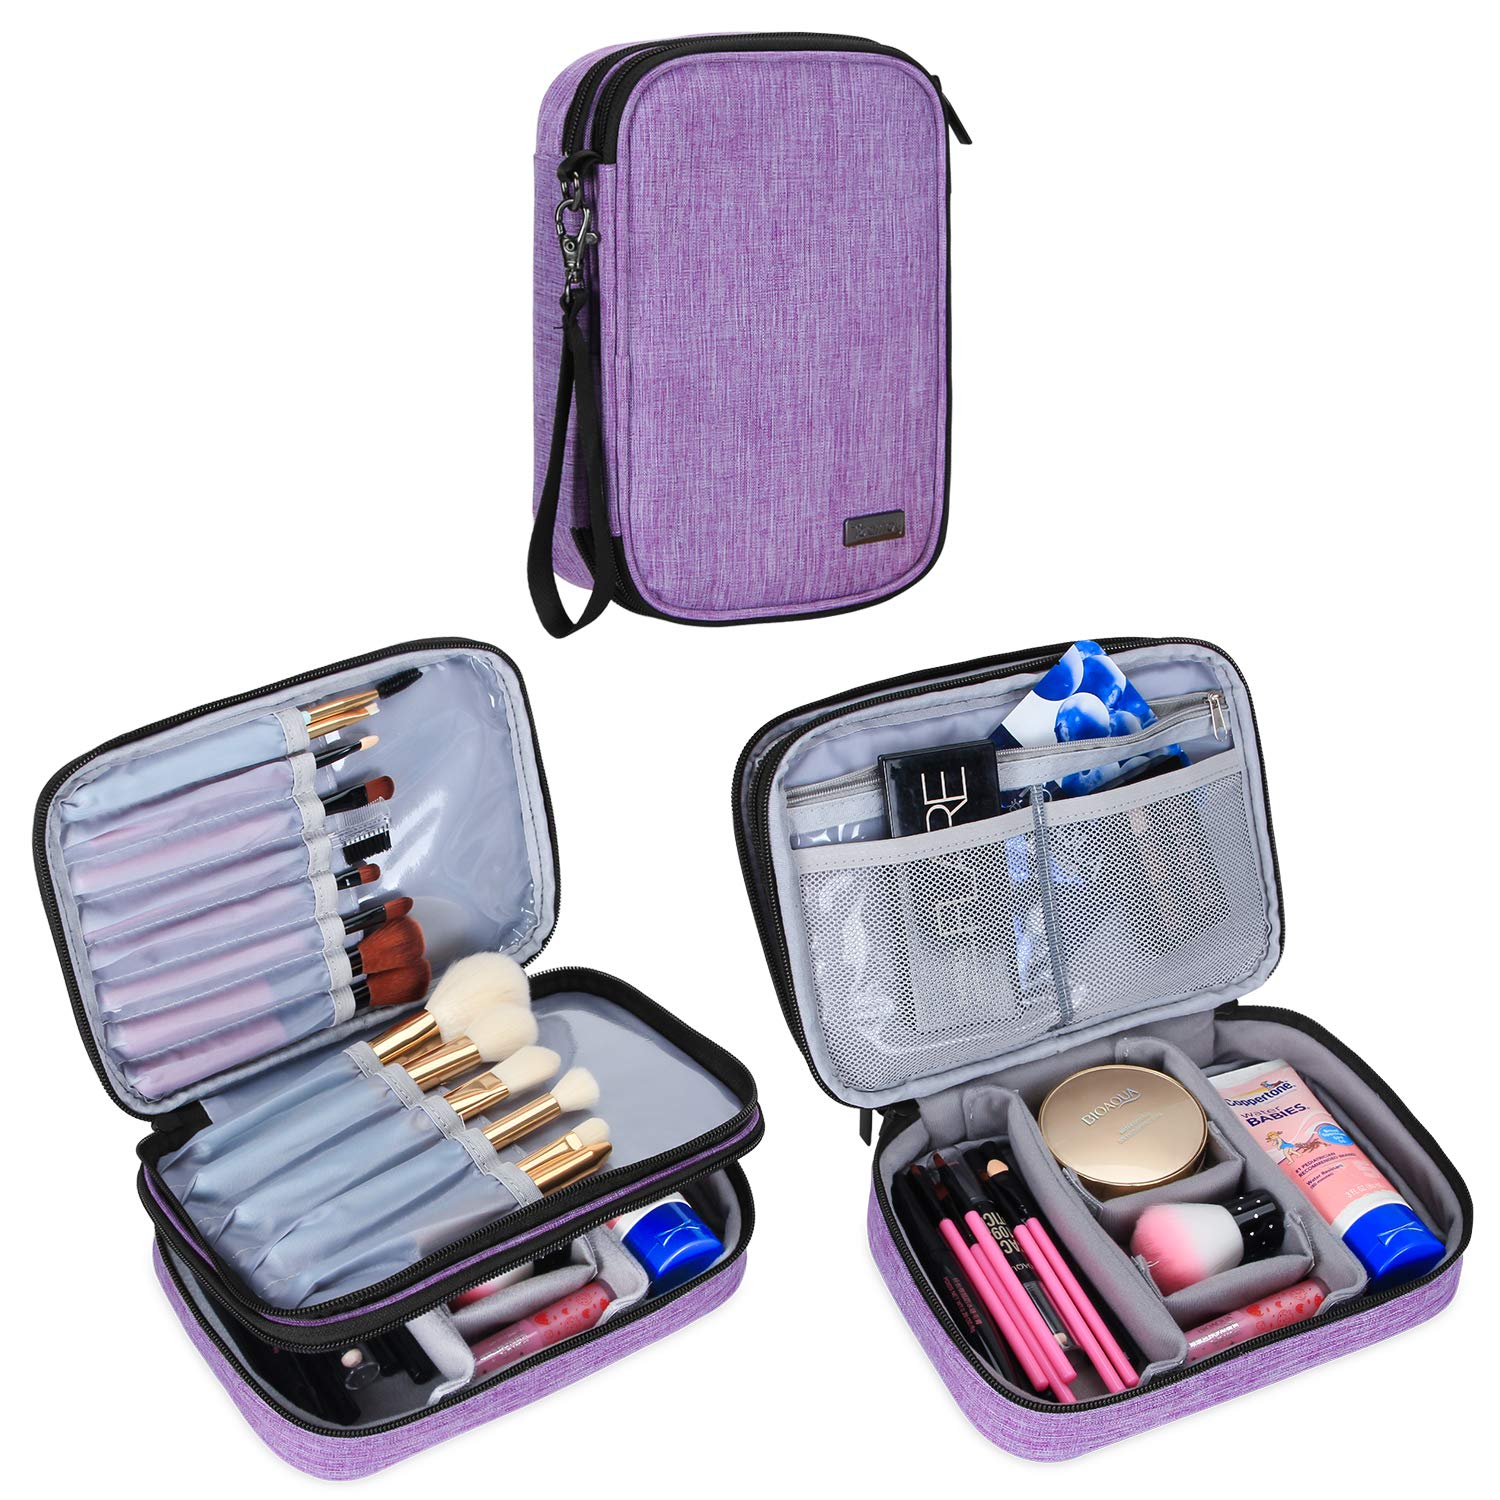 여행용 메이크업 브러쉬 케이스(최대 8.8인치), 화장품 필수품용 핸들 스트랩이 있는 전문 화장품 기차 정리 가방-중간 및 메이크업 브러쉬, 보라색(액세서리 포함 안 됨)